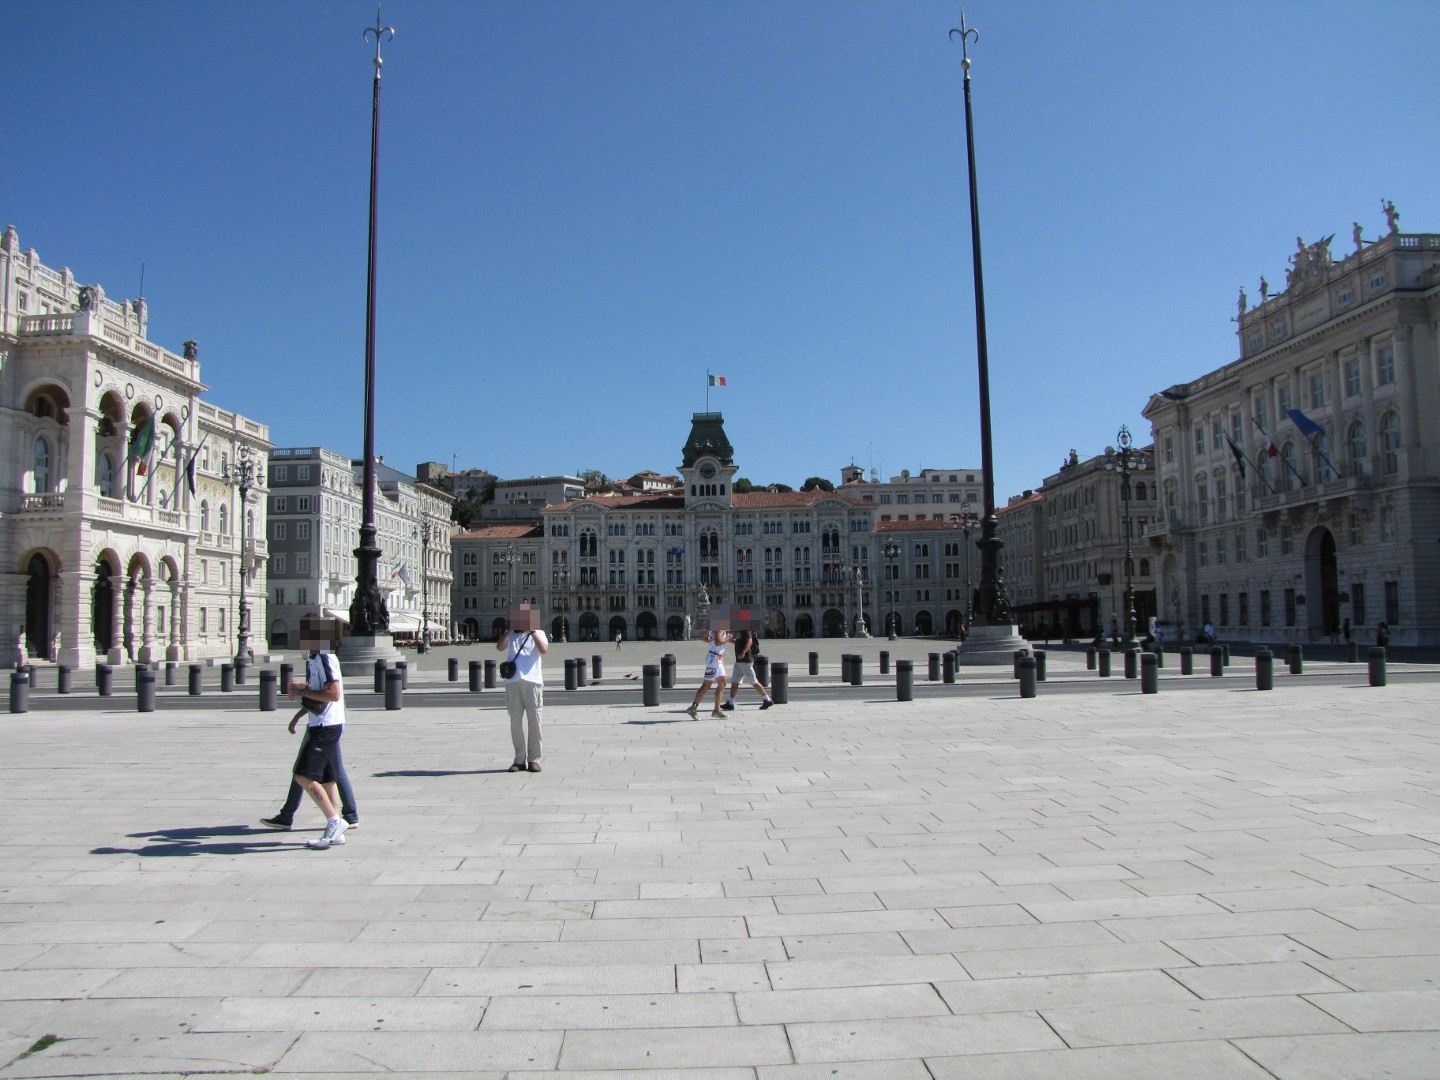 301) Trieste - Piazza dell'Unita Mitte